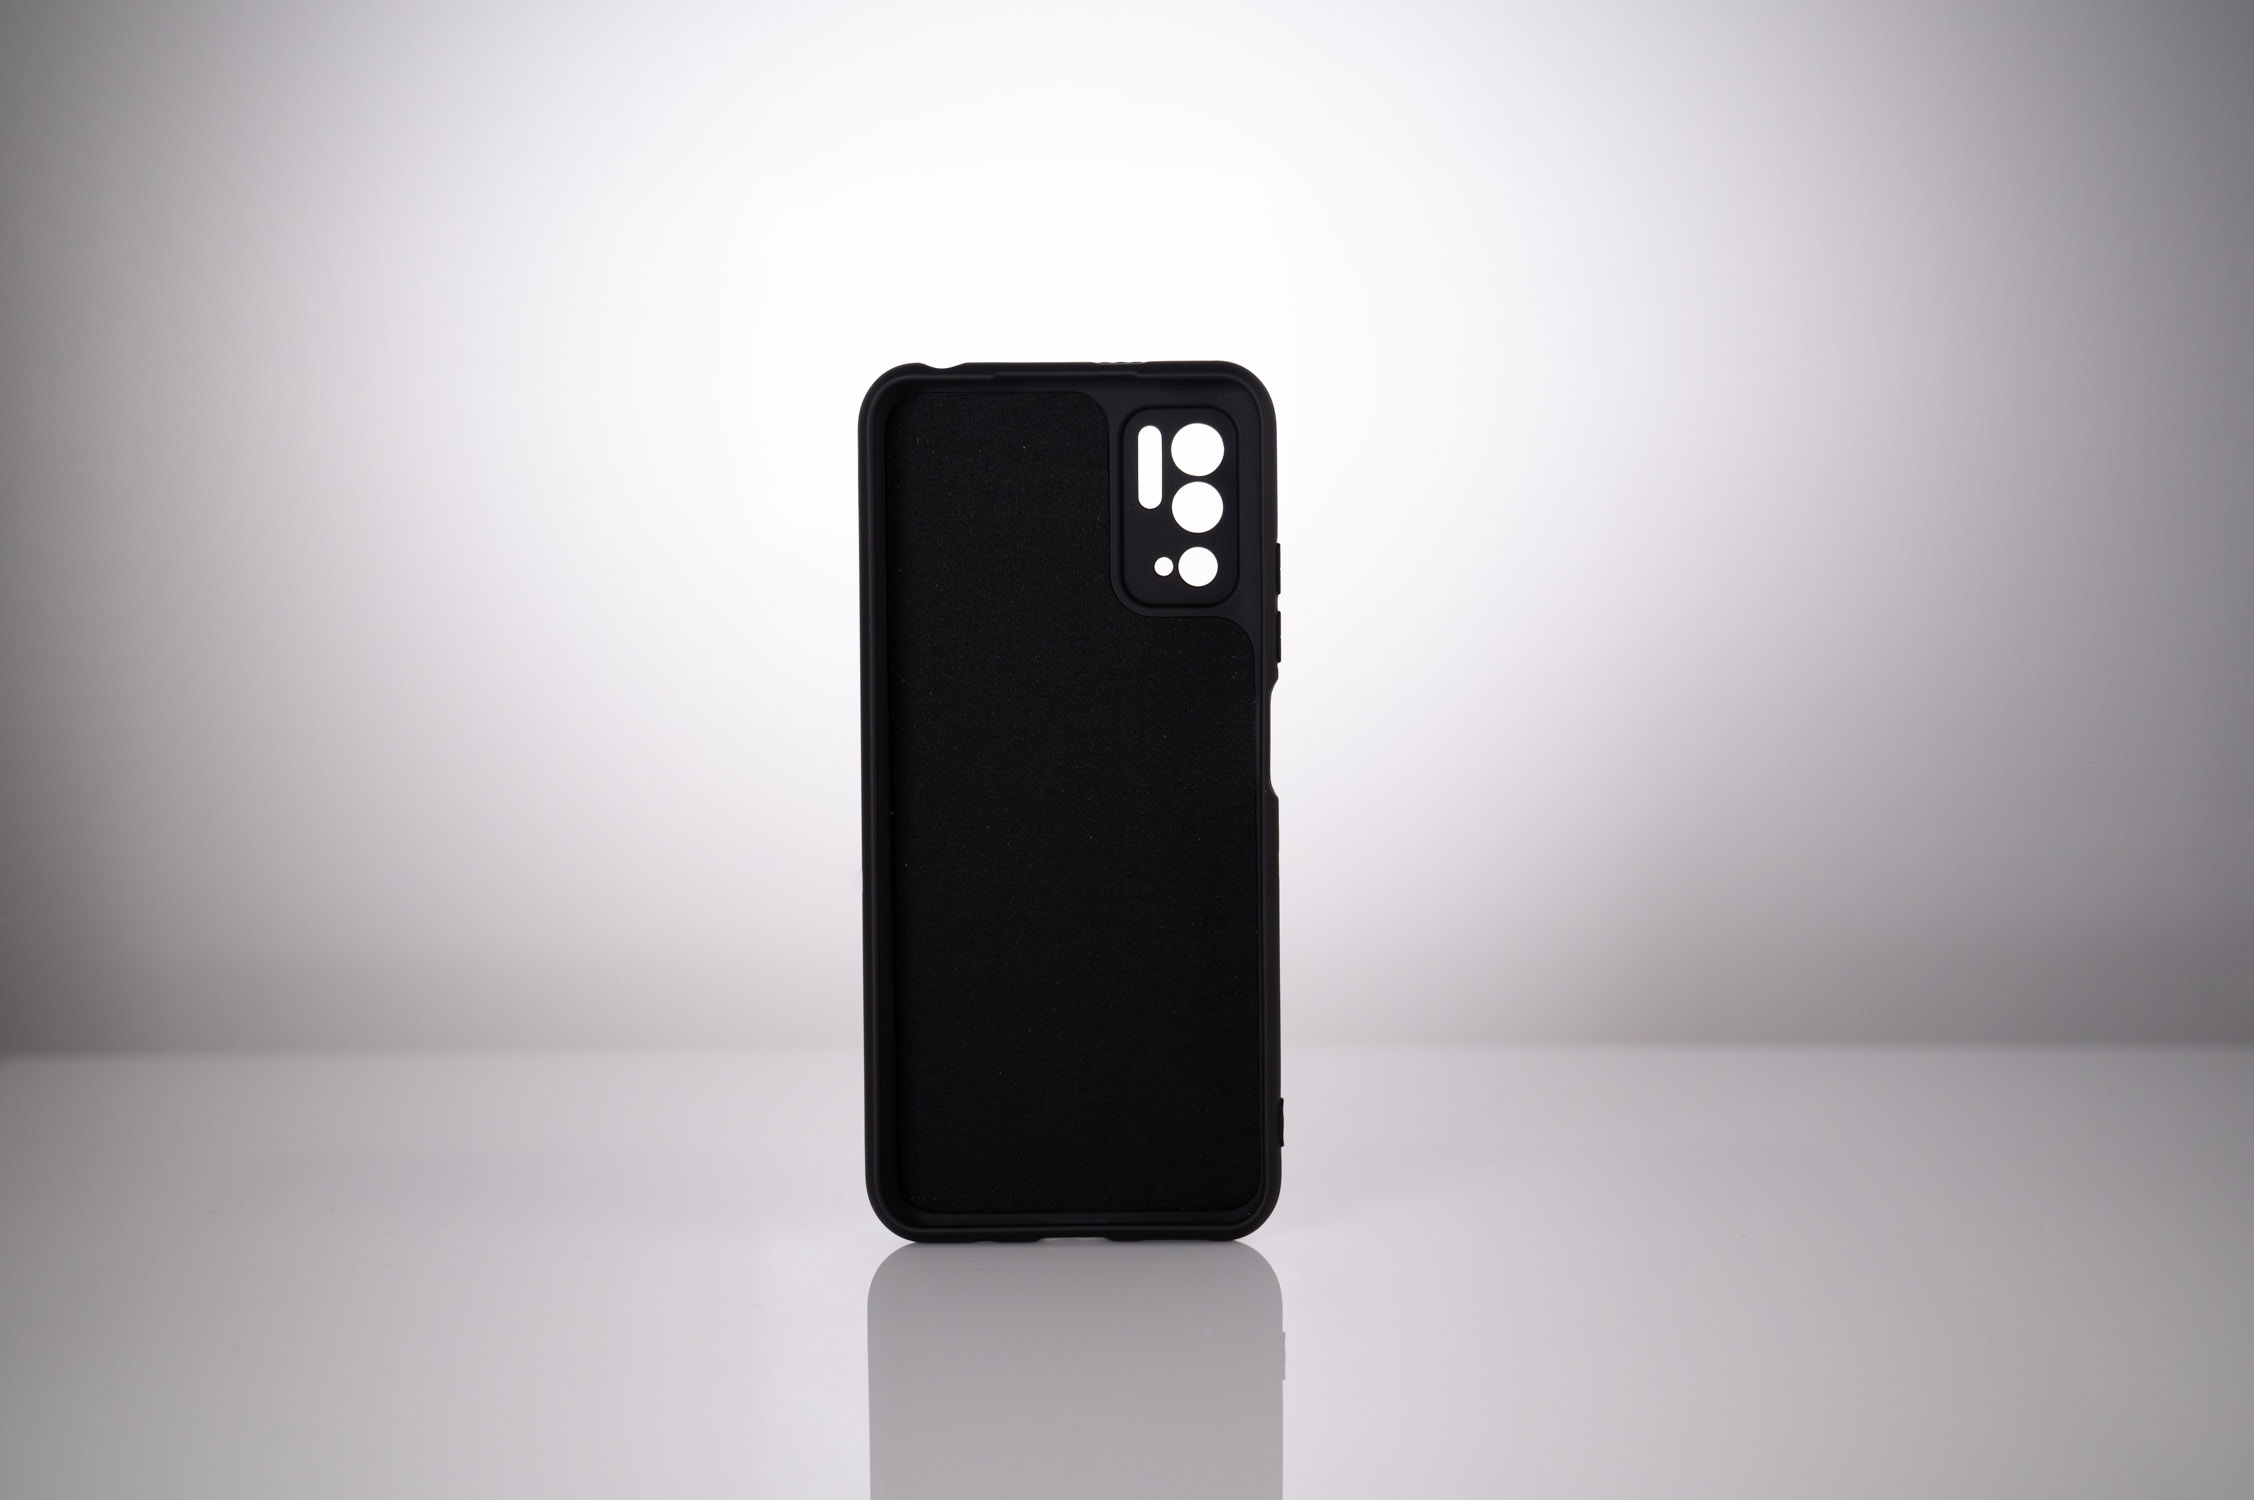 HUSA SMARTPHONE Spacer pentru Xiaomi Redmi Note 10 5G, grosime 2mm, material flexibil silicon + interior cu microfibra, negru "SPPC-XI-RM-N105G-SLK" thumb